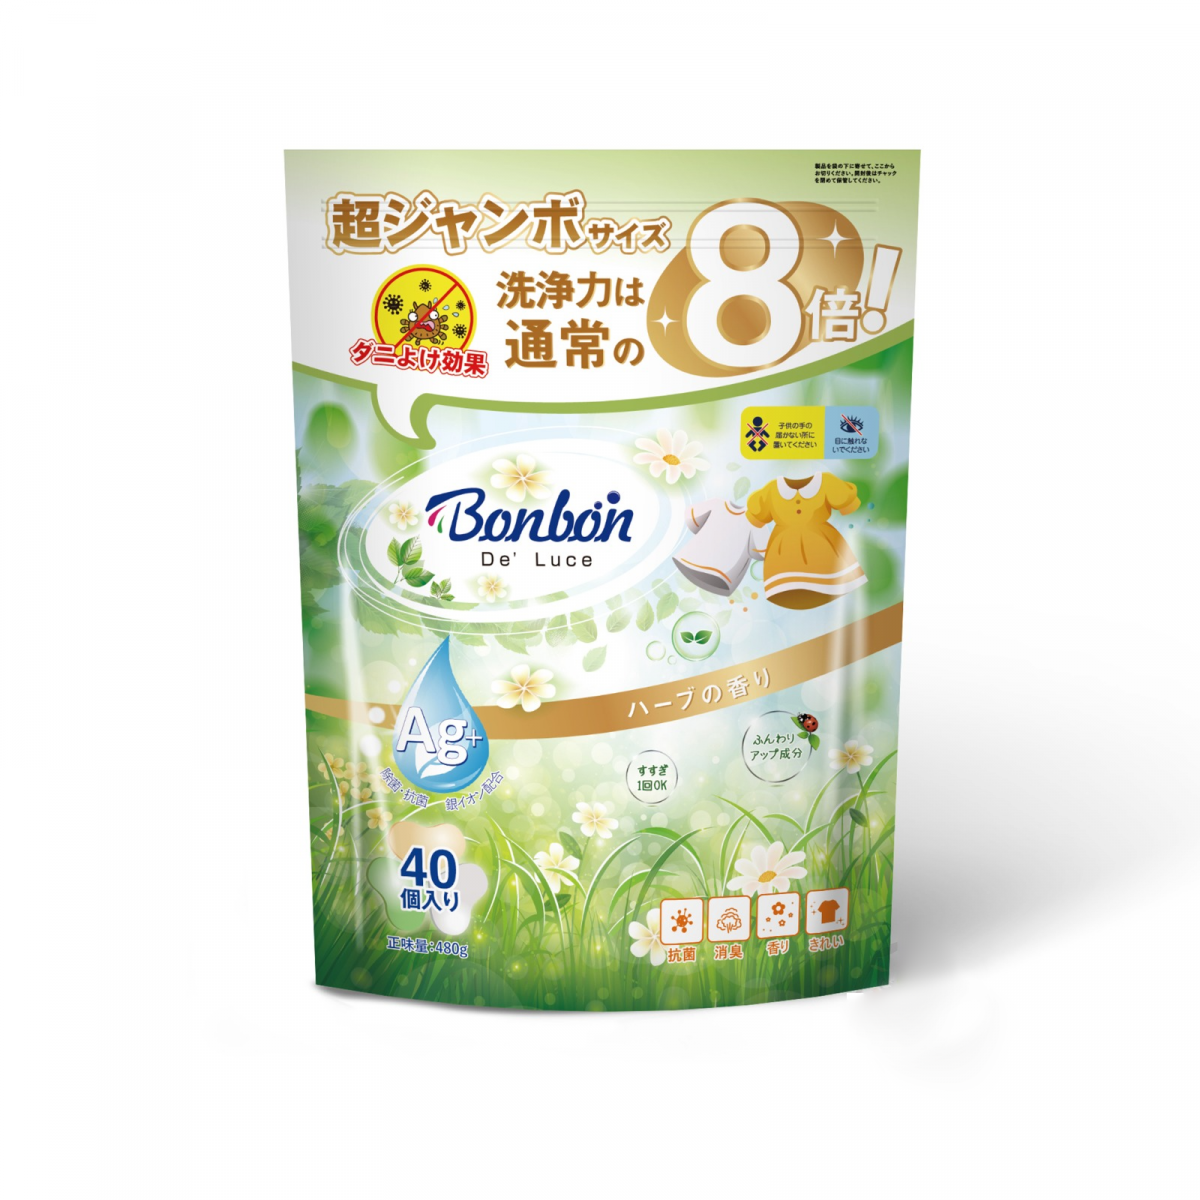 antibacterial gel laundry capsule‧3-in-1‧Silverion‧Antibacterial‧Deodorization -Fresh pasture floral